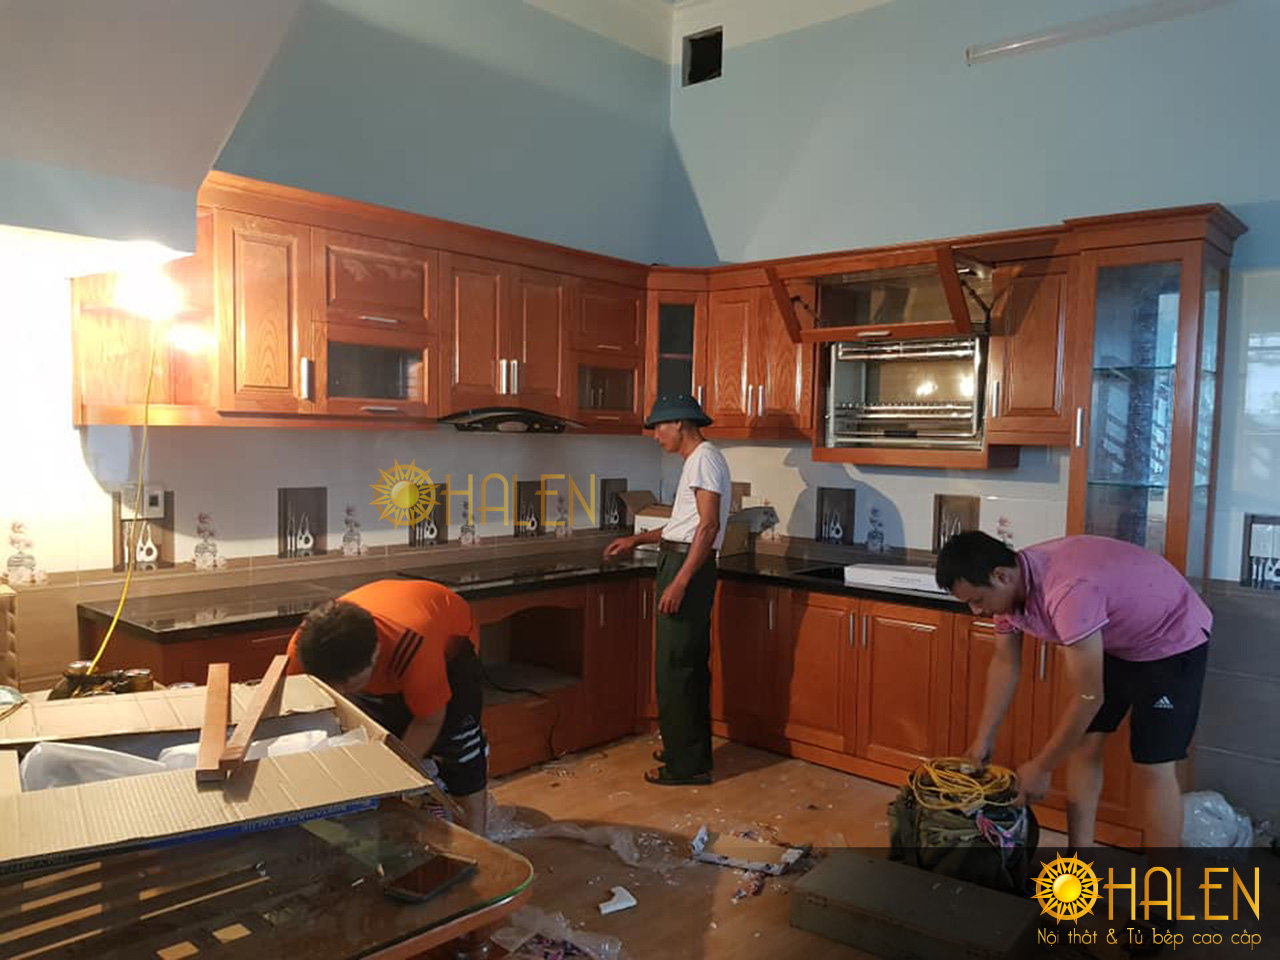 Thợ thi công của OHALEN đang tiến hành lắp đặt tủ bếp cho gia đình chị Nga